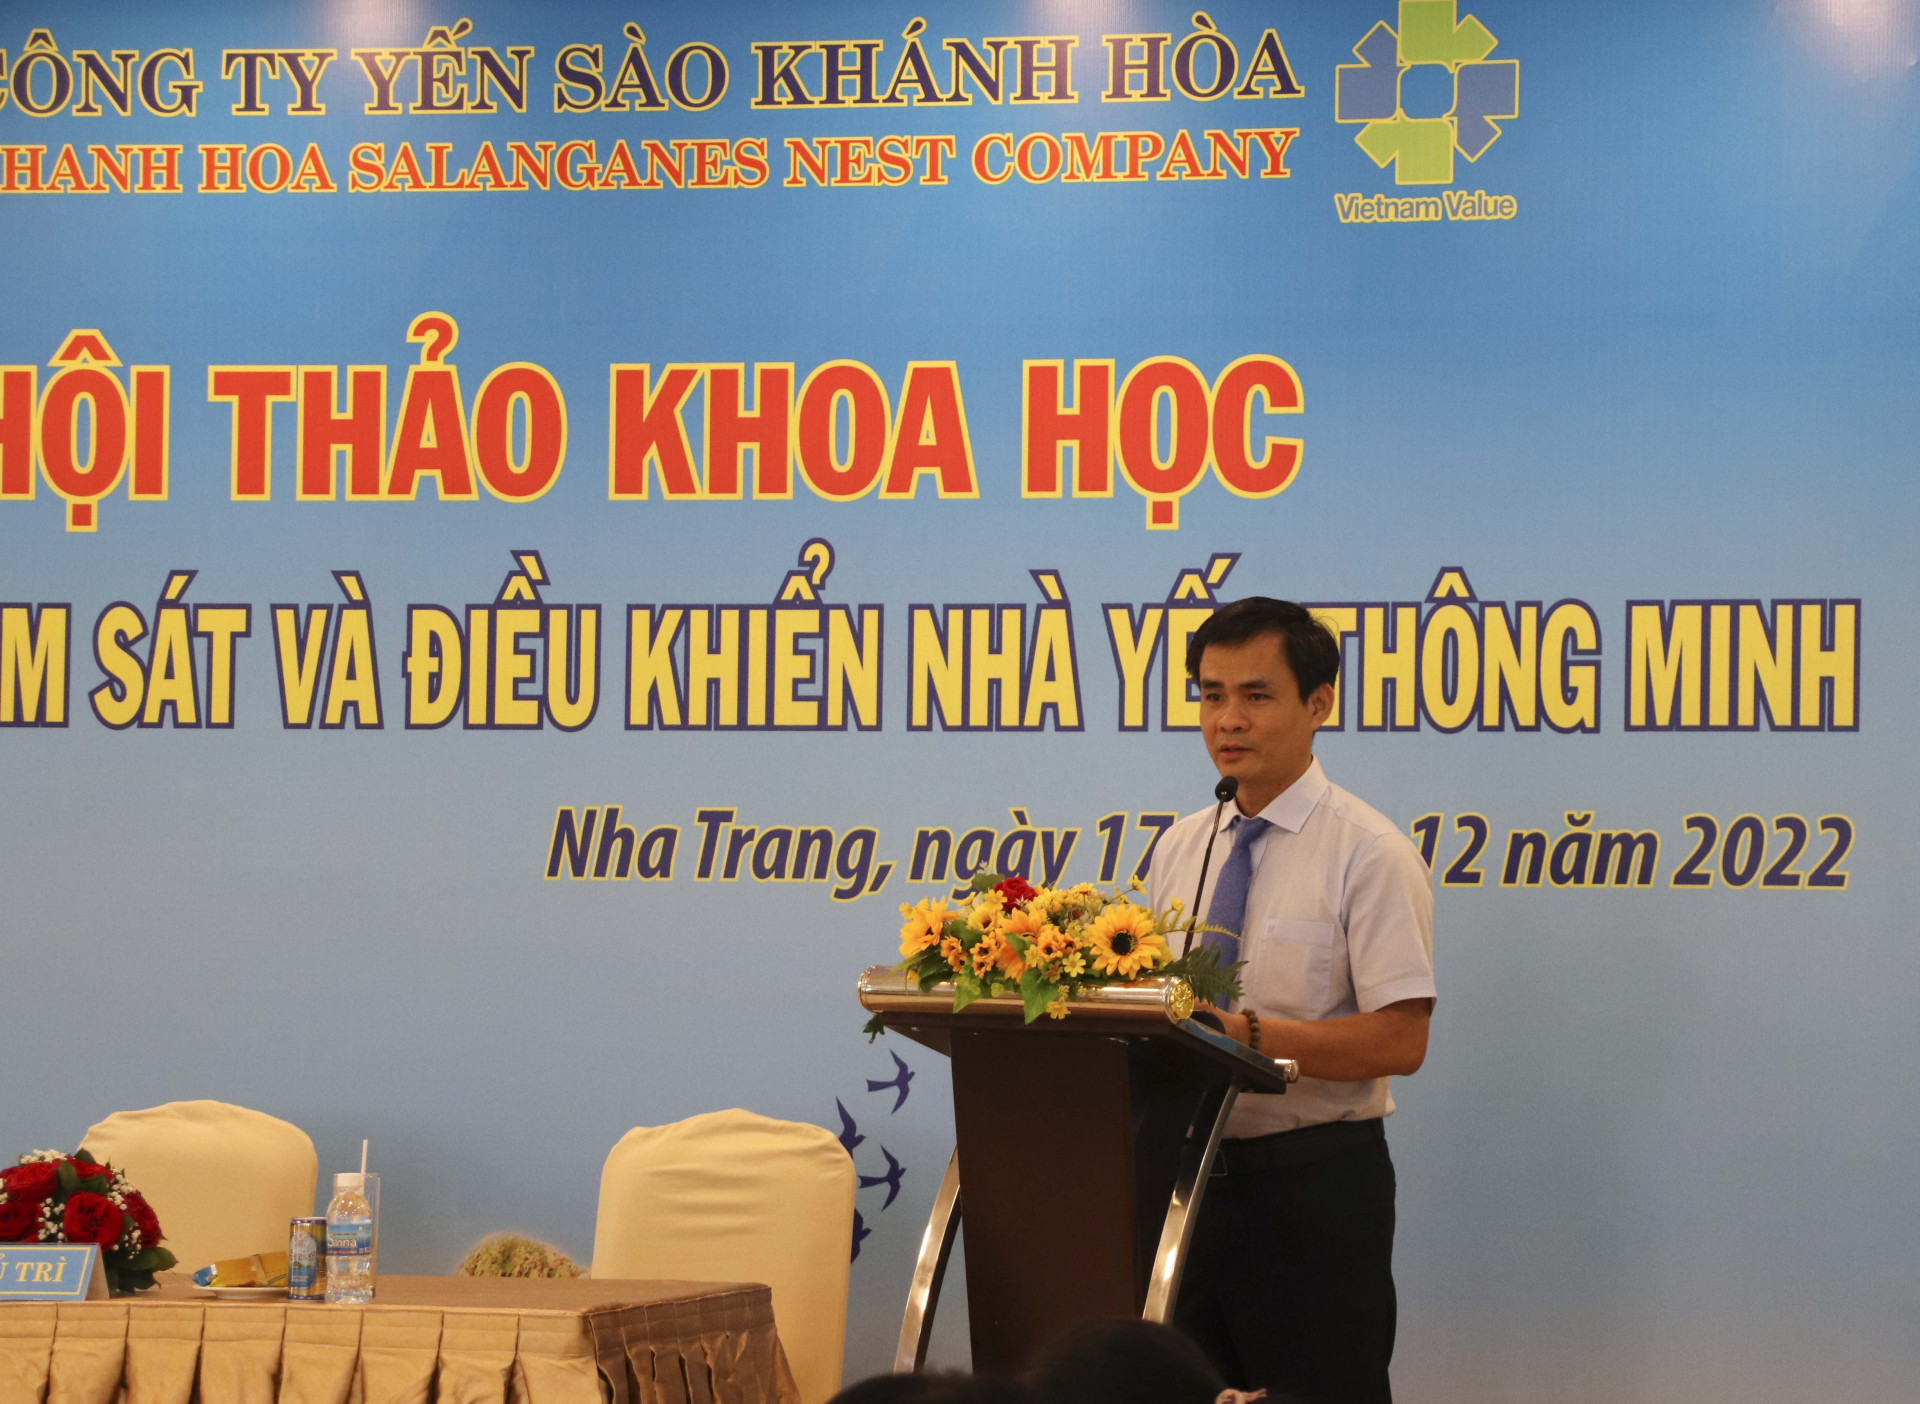 Ông Nguyễn Thanh Hải - Tổng giám đốc Công ty Yến sào Khánh Hòa phát biểu khai mạc